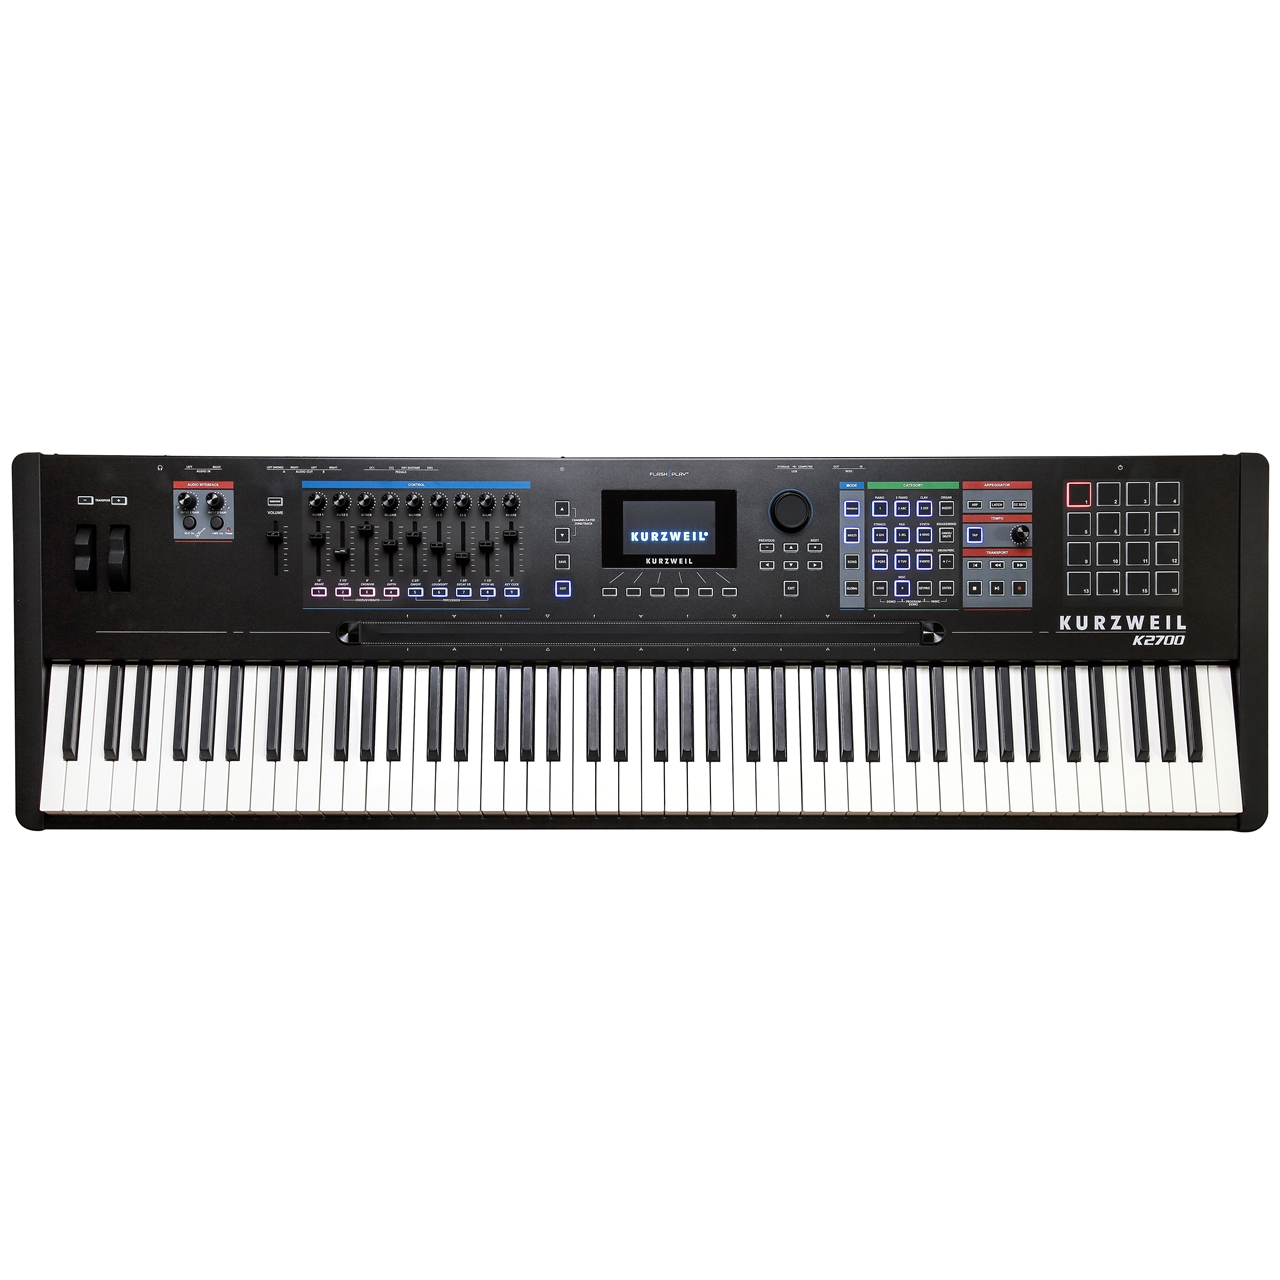 Kurzweil K2700 - Flagship Keyboard Workstation